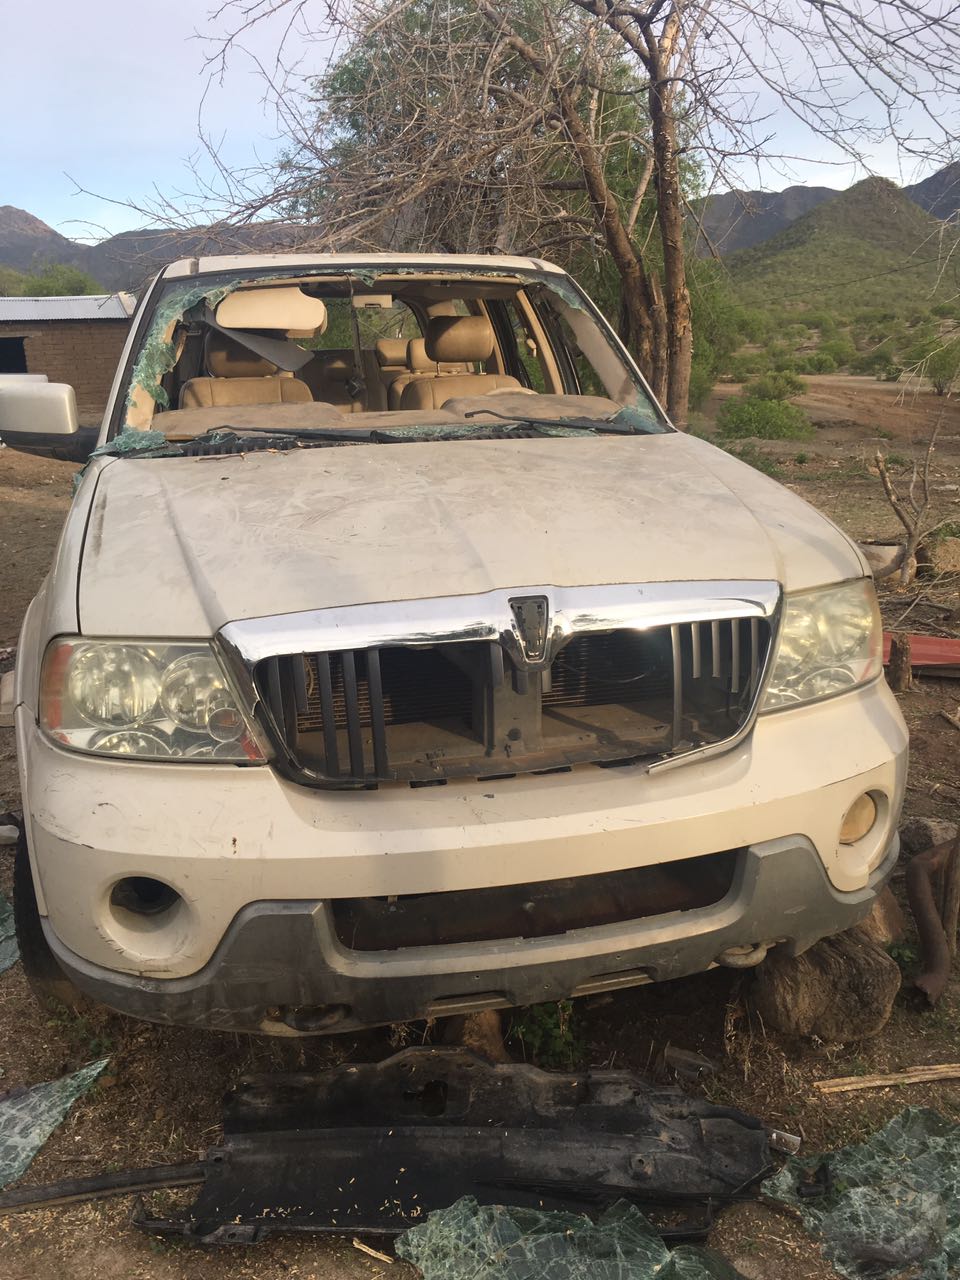 Aseguran 17 vehículos robados en límites entre Chihuahua y Sinaloa